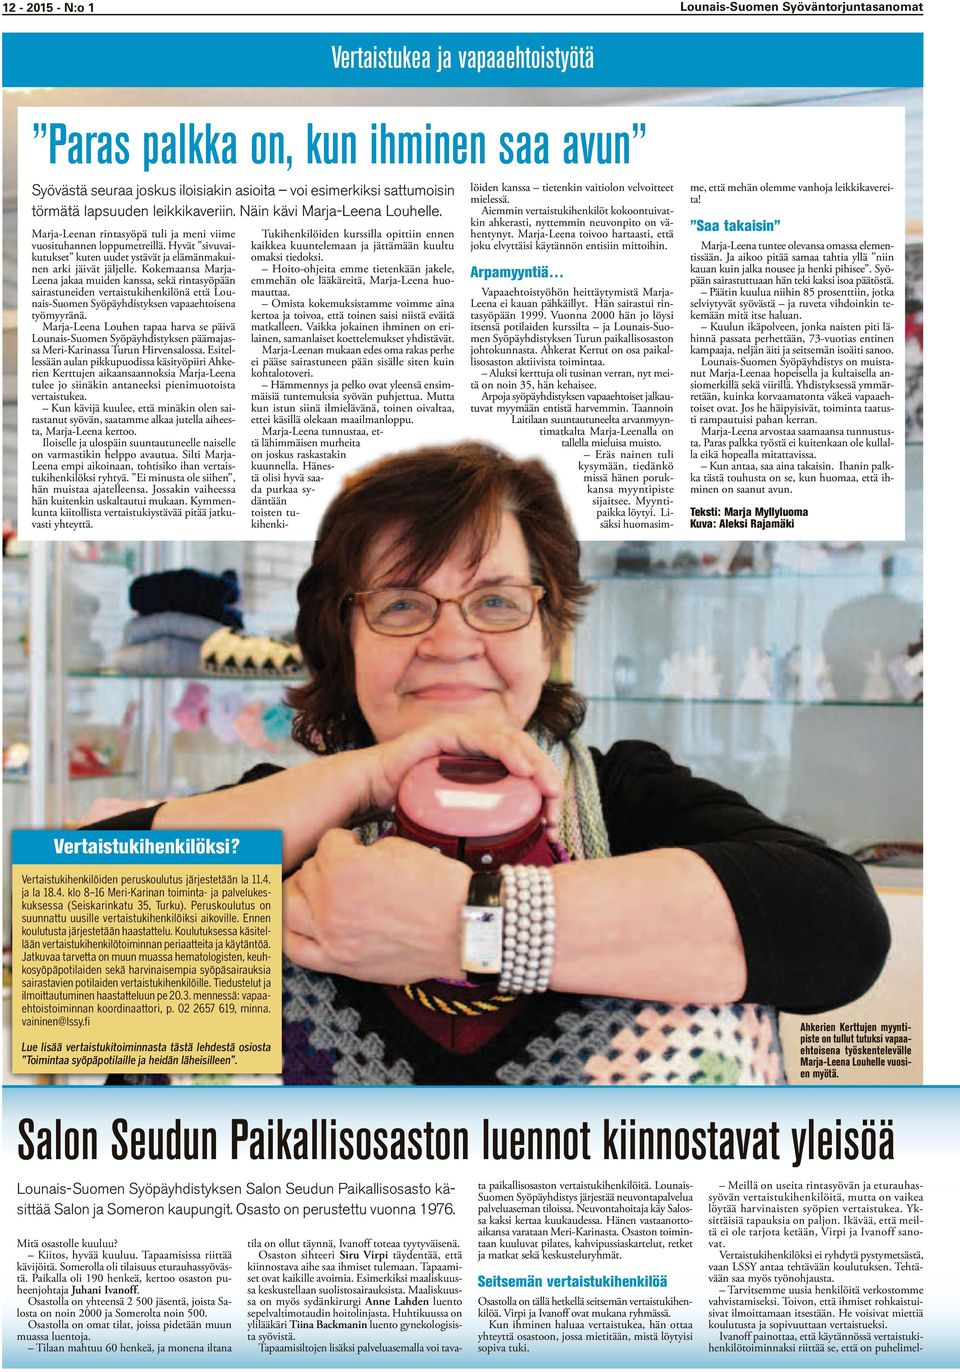 Kokemaansa Marja- Leena jakaa muiden kanssa, sekä rinasyöpään sairasuneiden veraisukihenkilönä eä Lounais-Suomen Syöpäyhdisyksen vapaaehoisena yömyyränä.